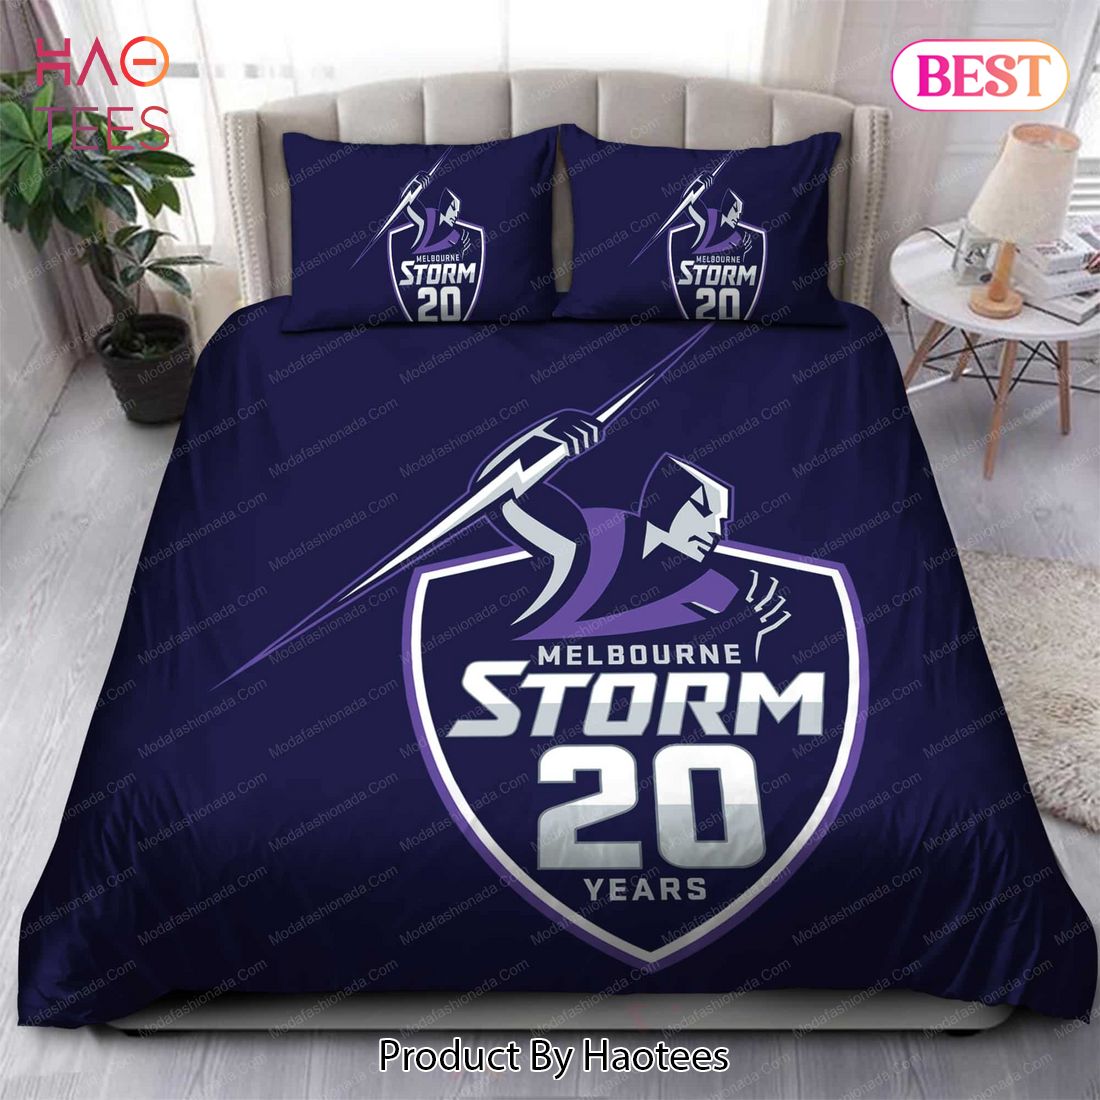 Buy Melbourne Storm Logo 2018 Bedding Sets Bed Sets, Bedroom Sets, Comforter Sets, Duvet Cover, Bedspread